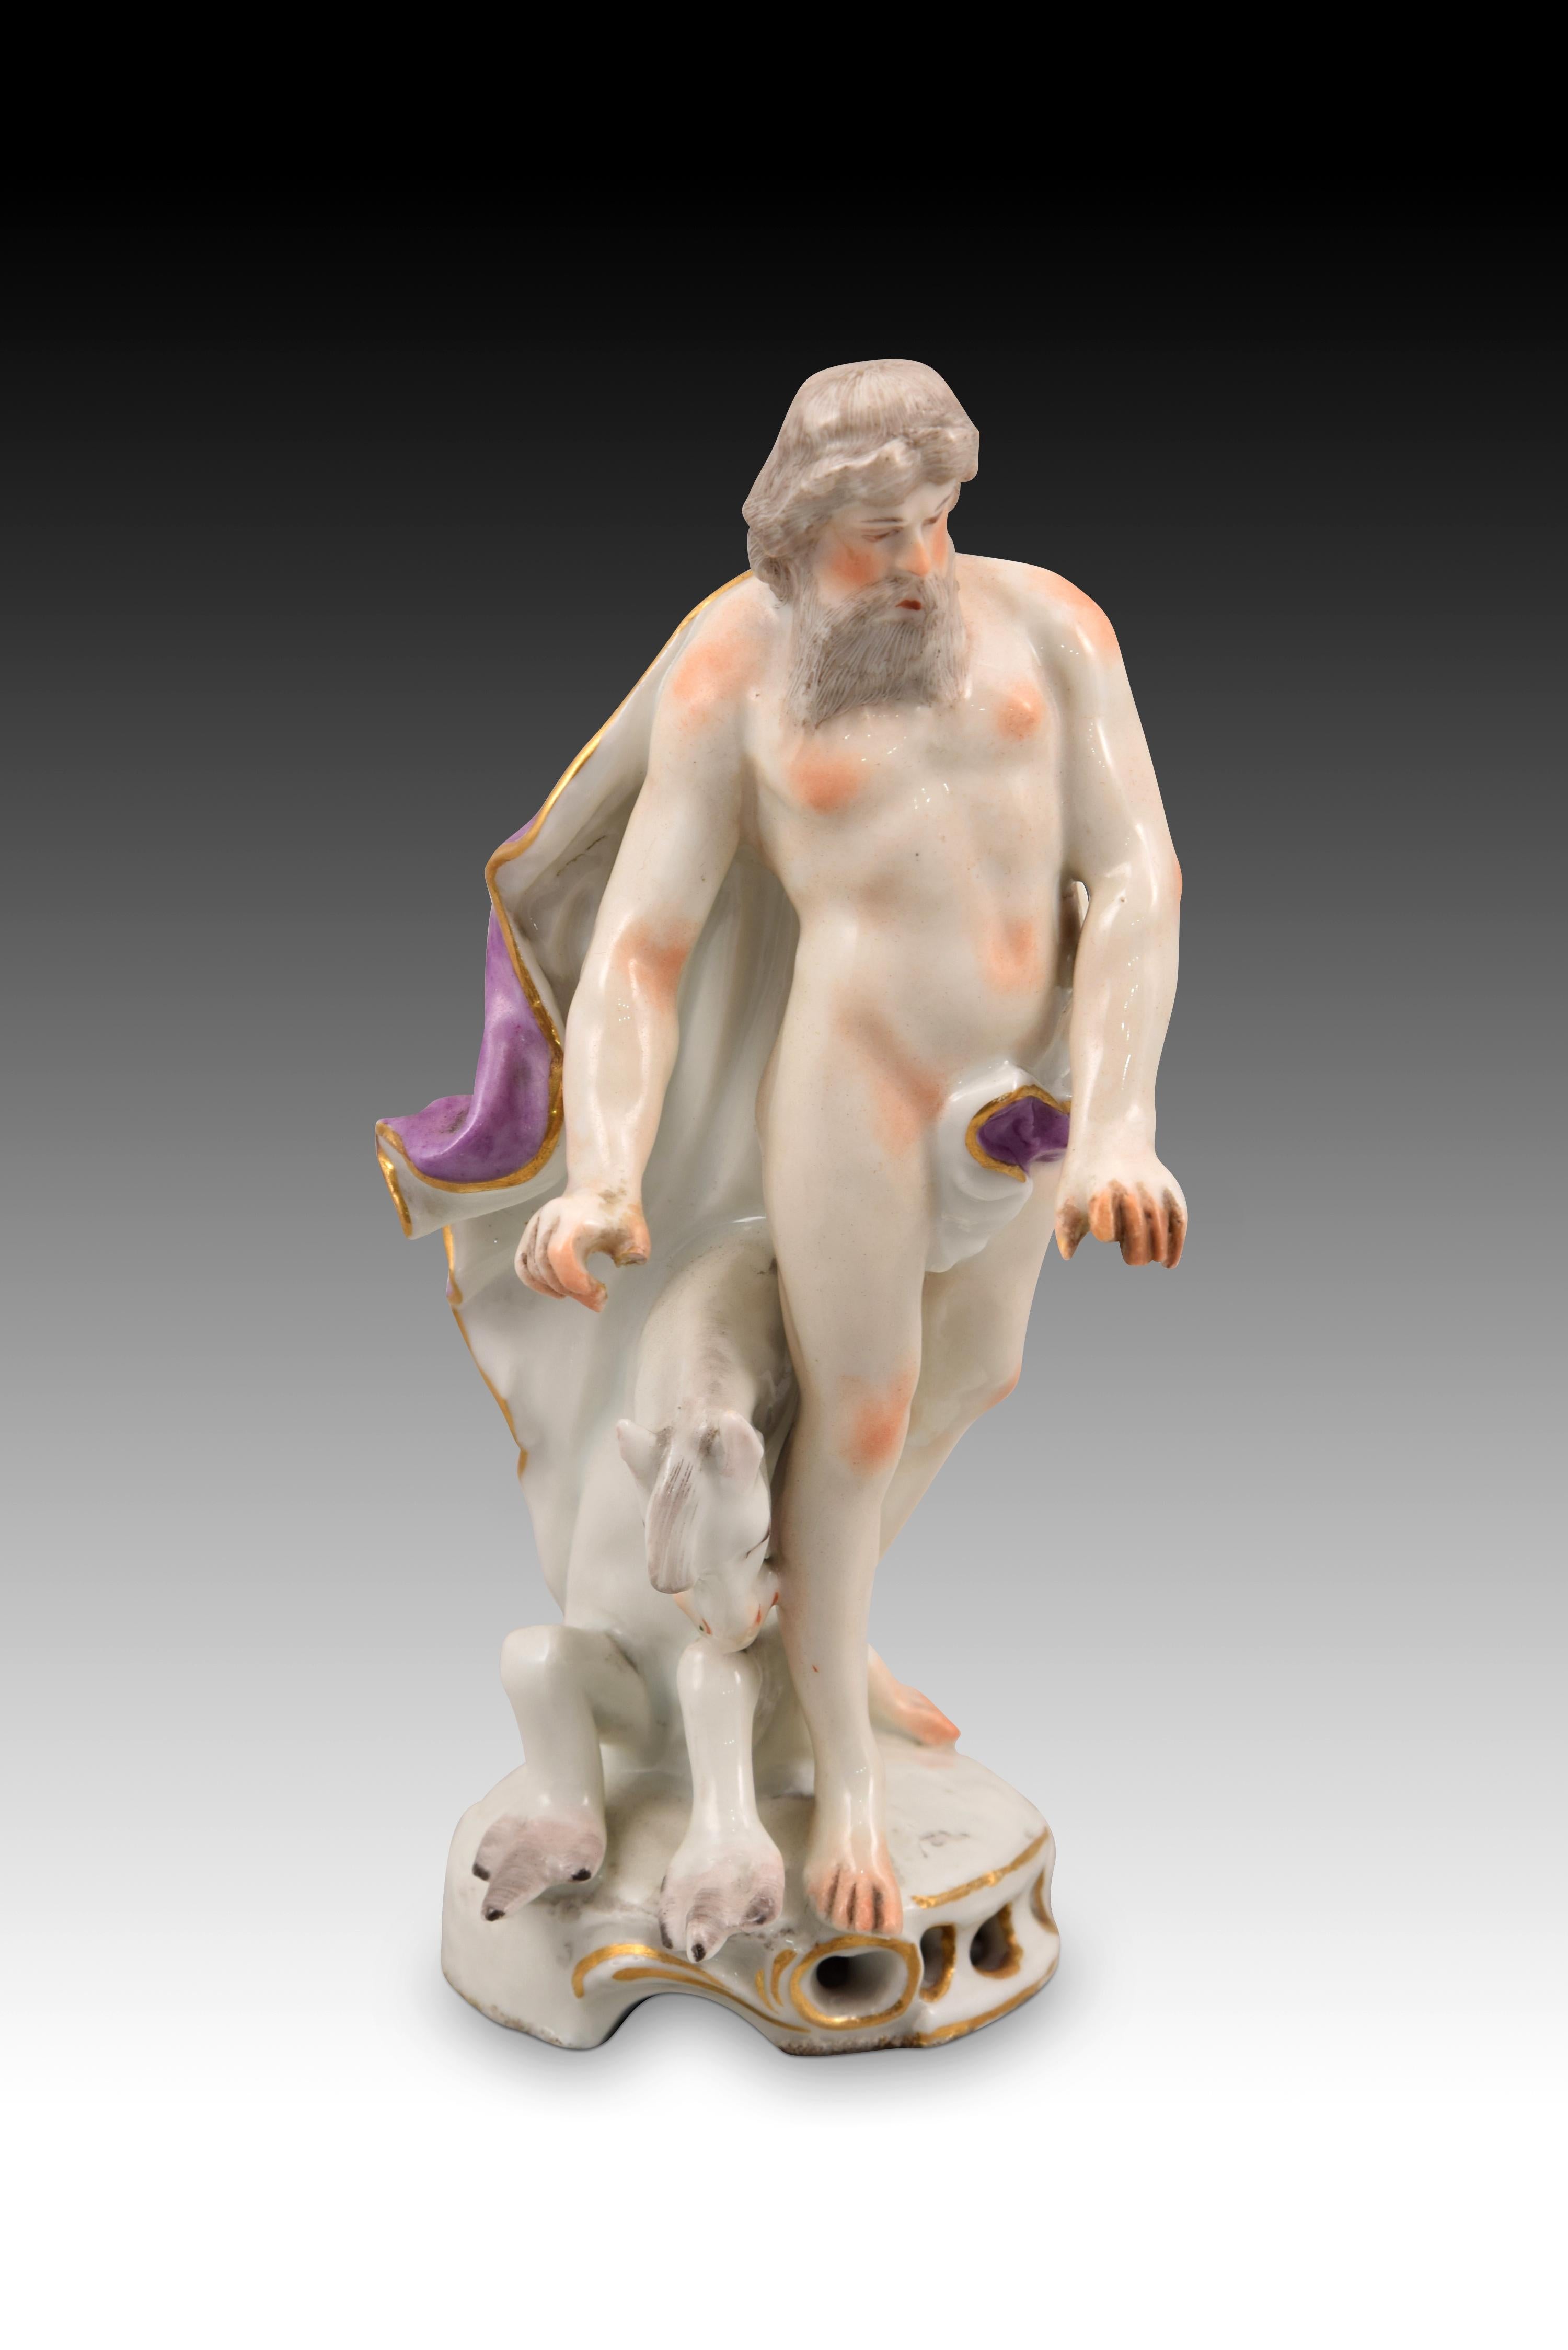 Poséidon ou Neptune avec hippocampe. Porcelaine émaillée. Europe, 19ème siècle. 
Figurine en porcelaine émaillée à base circulaire, décorée d'éléments ajourés et de motifs d'inspiration rococo rehaussés de touches dorées, qui présente un personnage